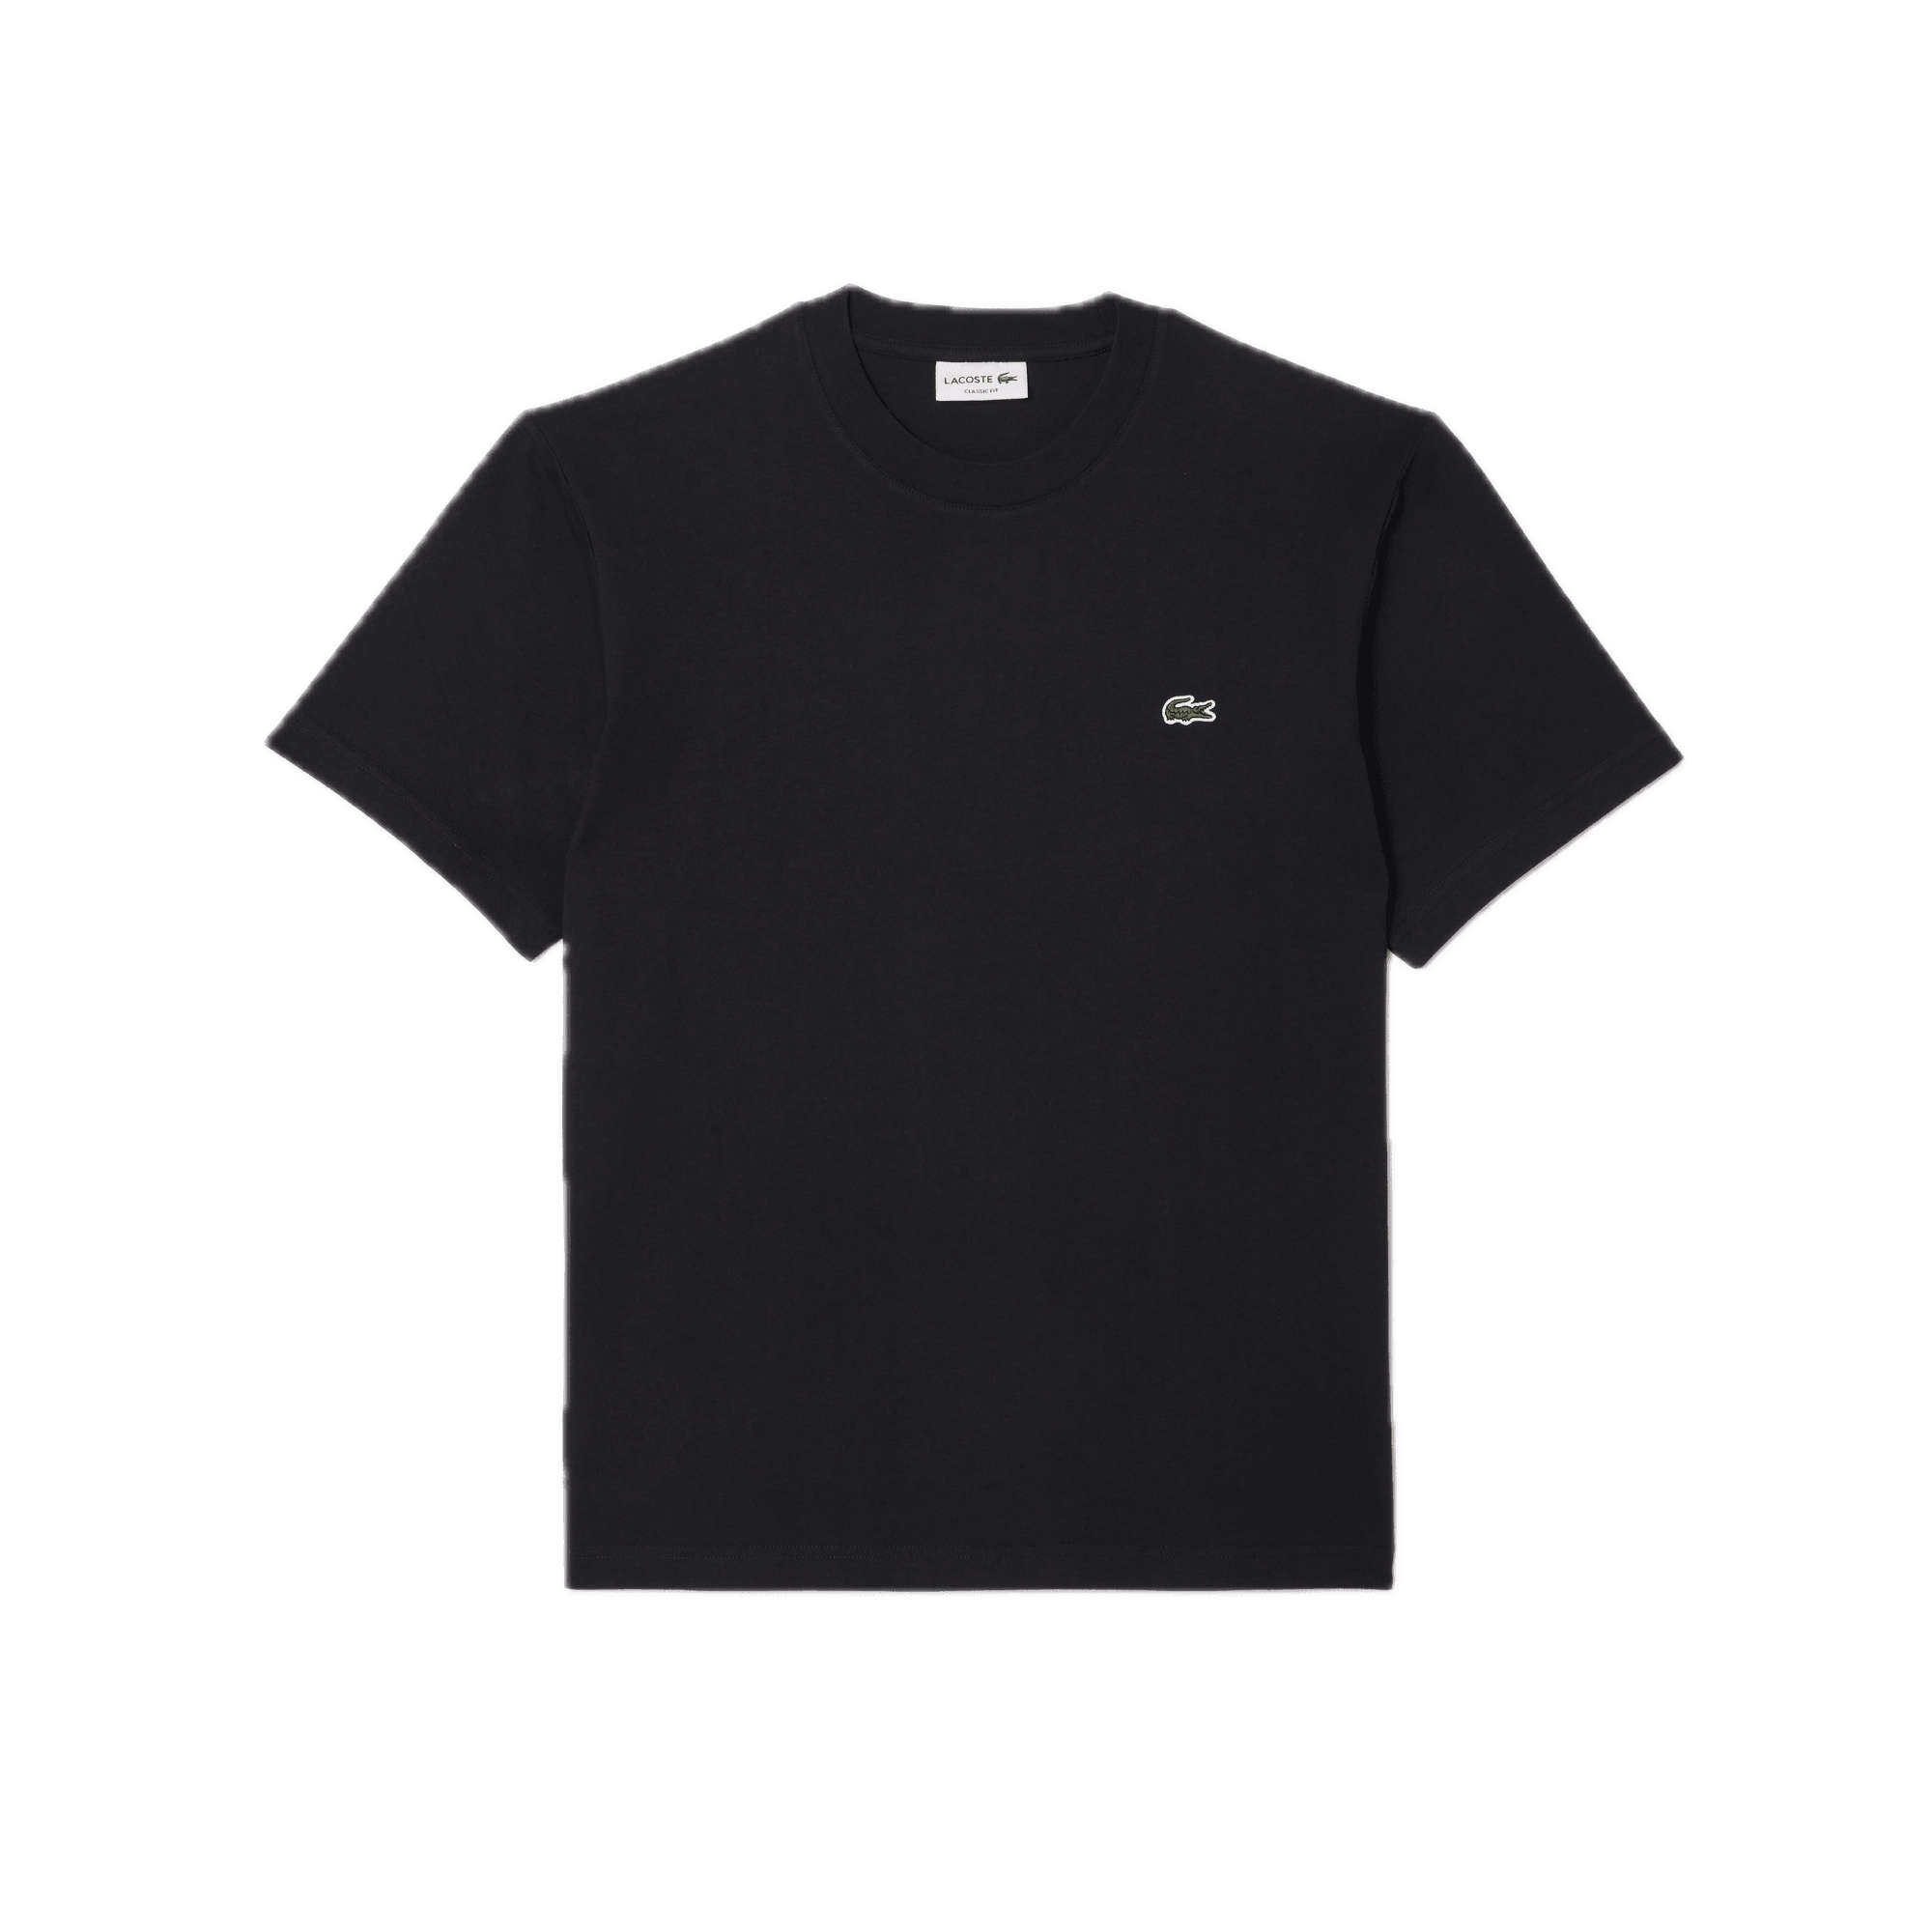 Camiseta Lacoste de Corte Clásico de Punto de Algodón Negra - ECRU